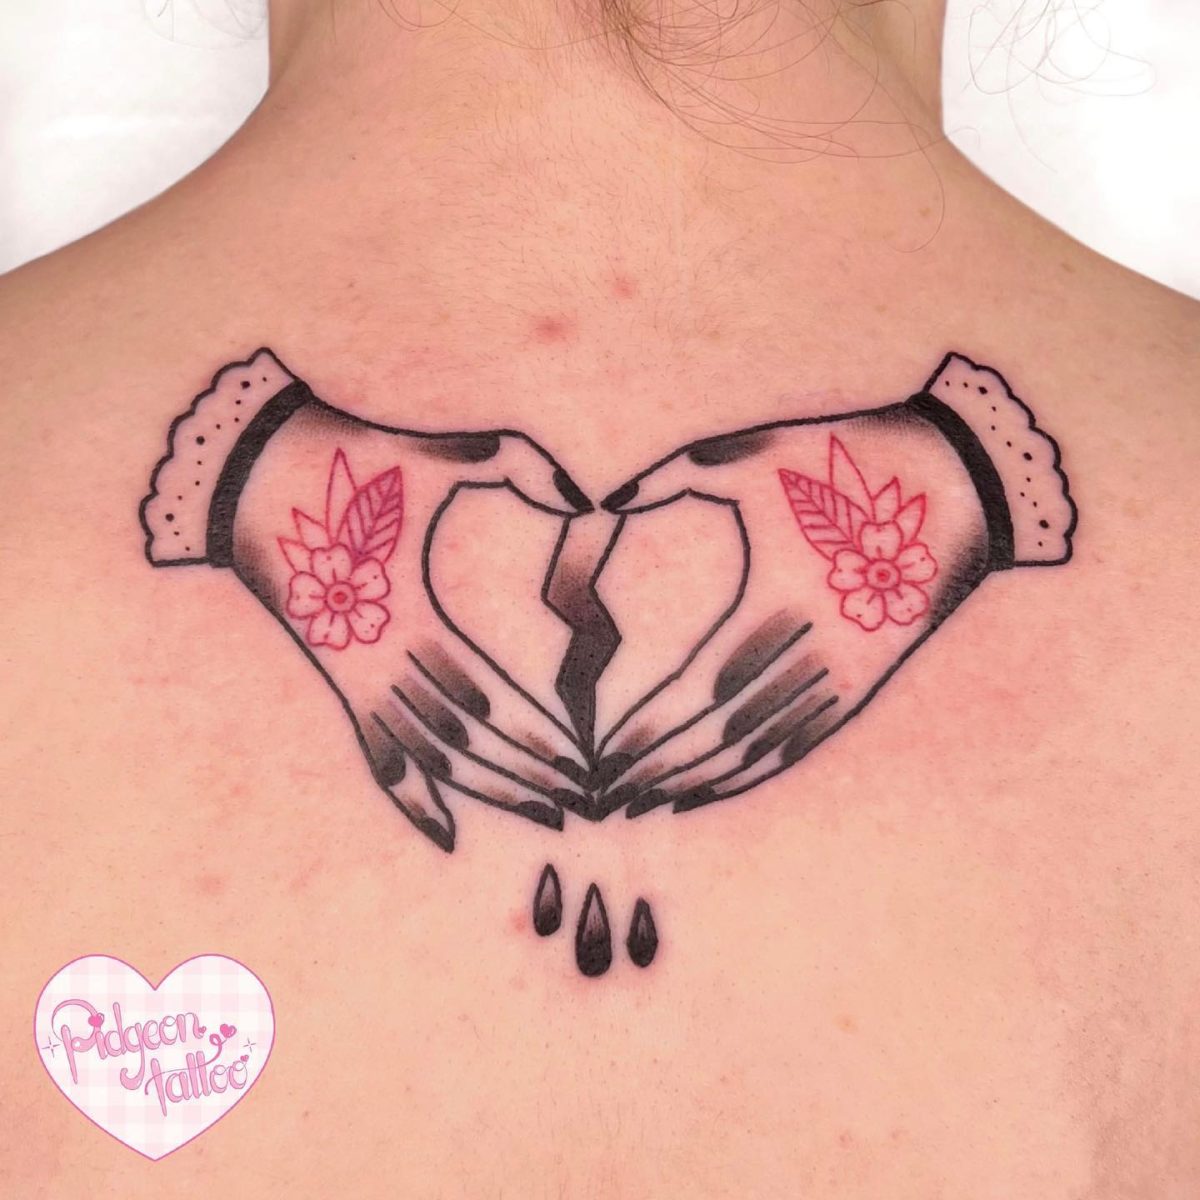 Broken Heart Tattoos